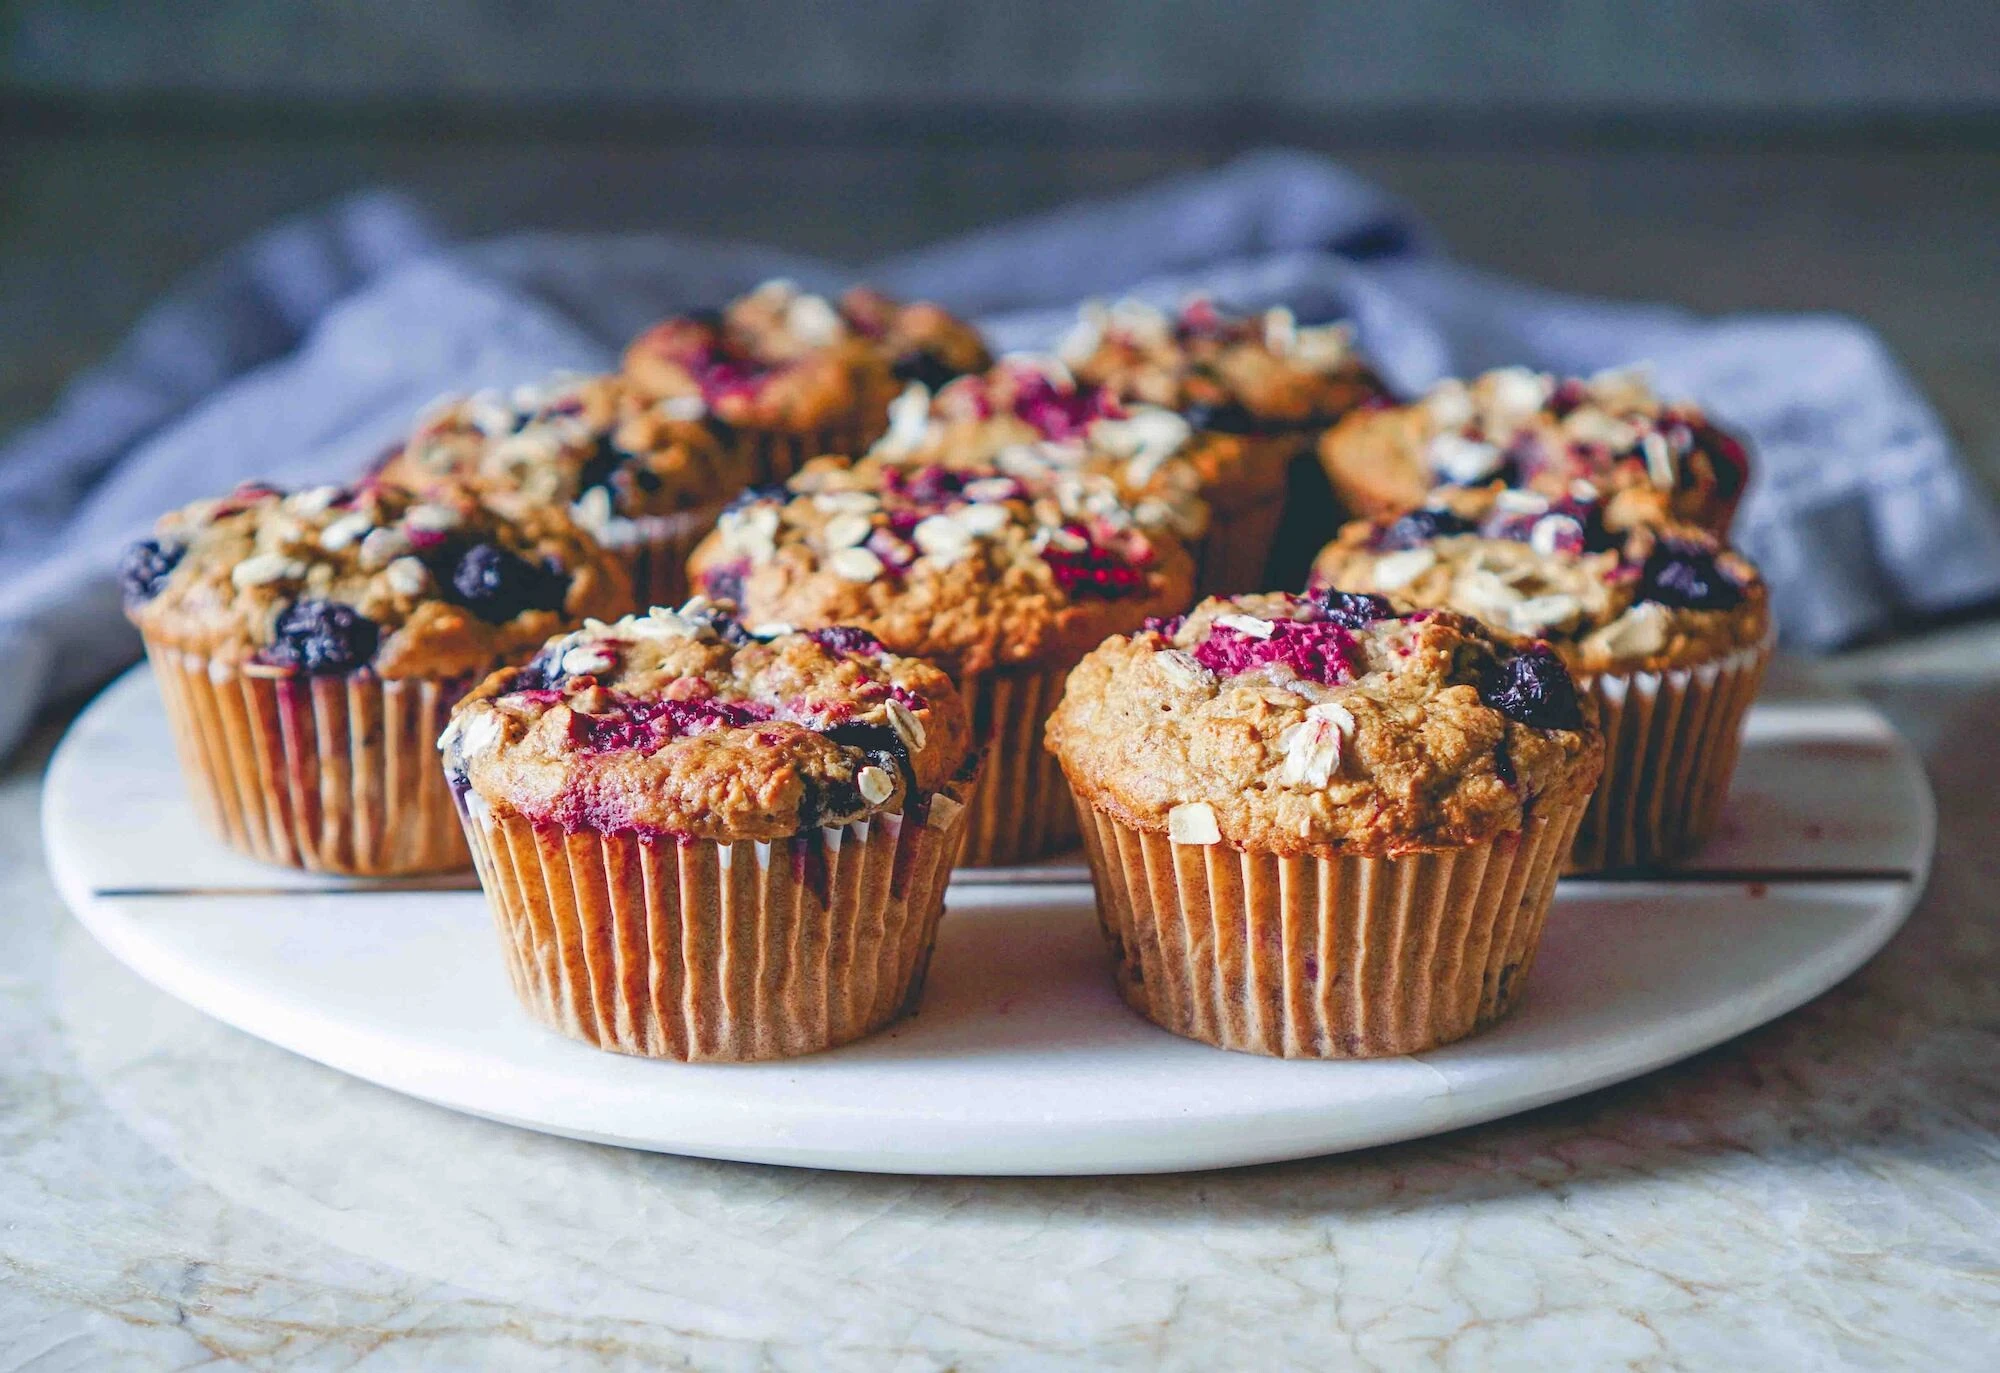 Blueberry protein muffins